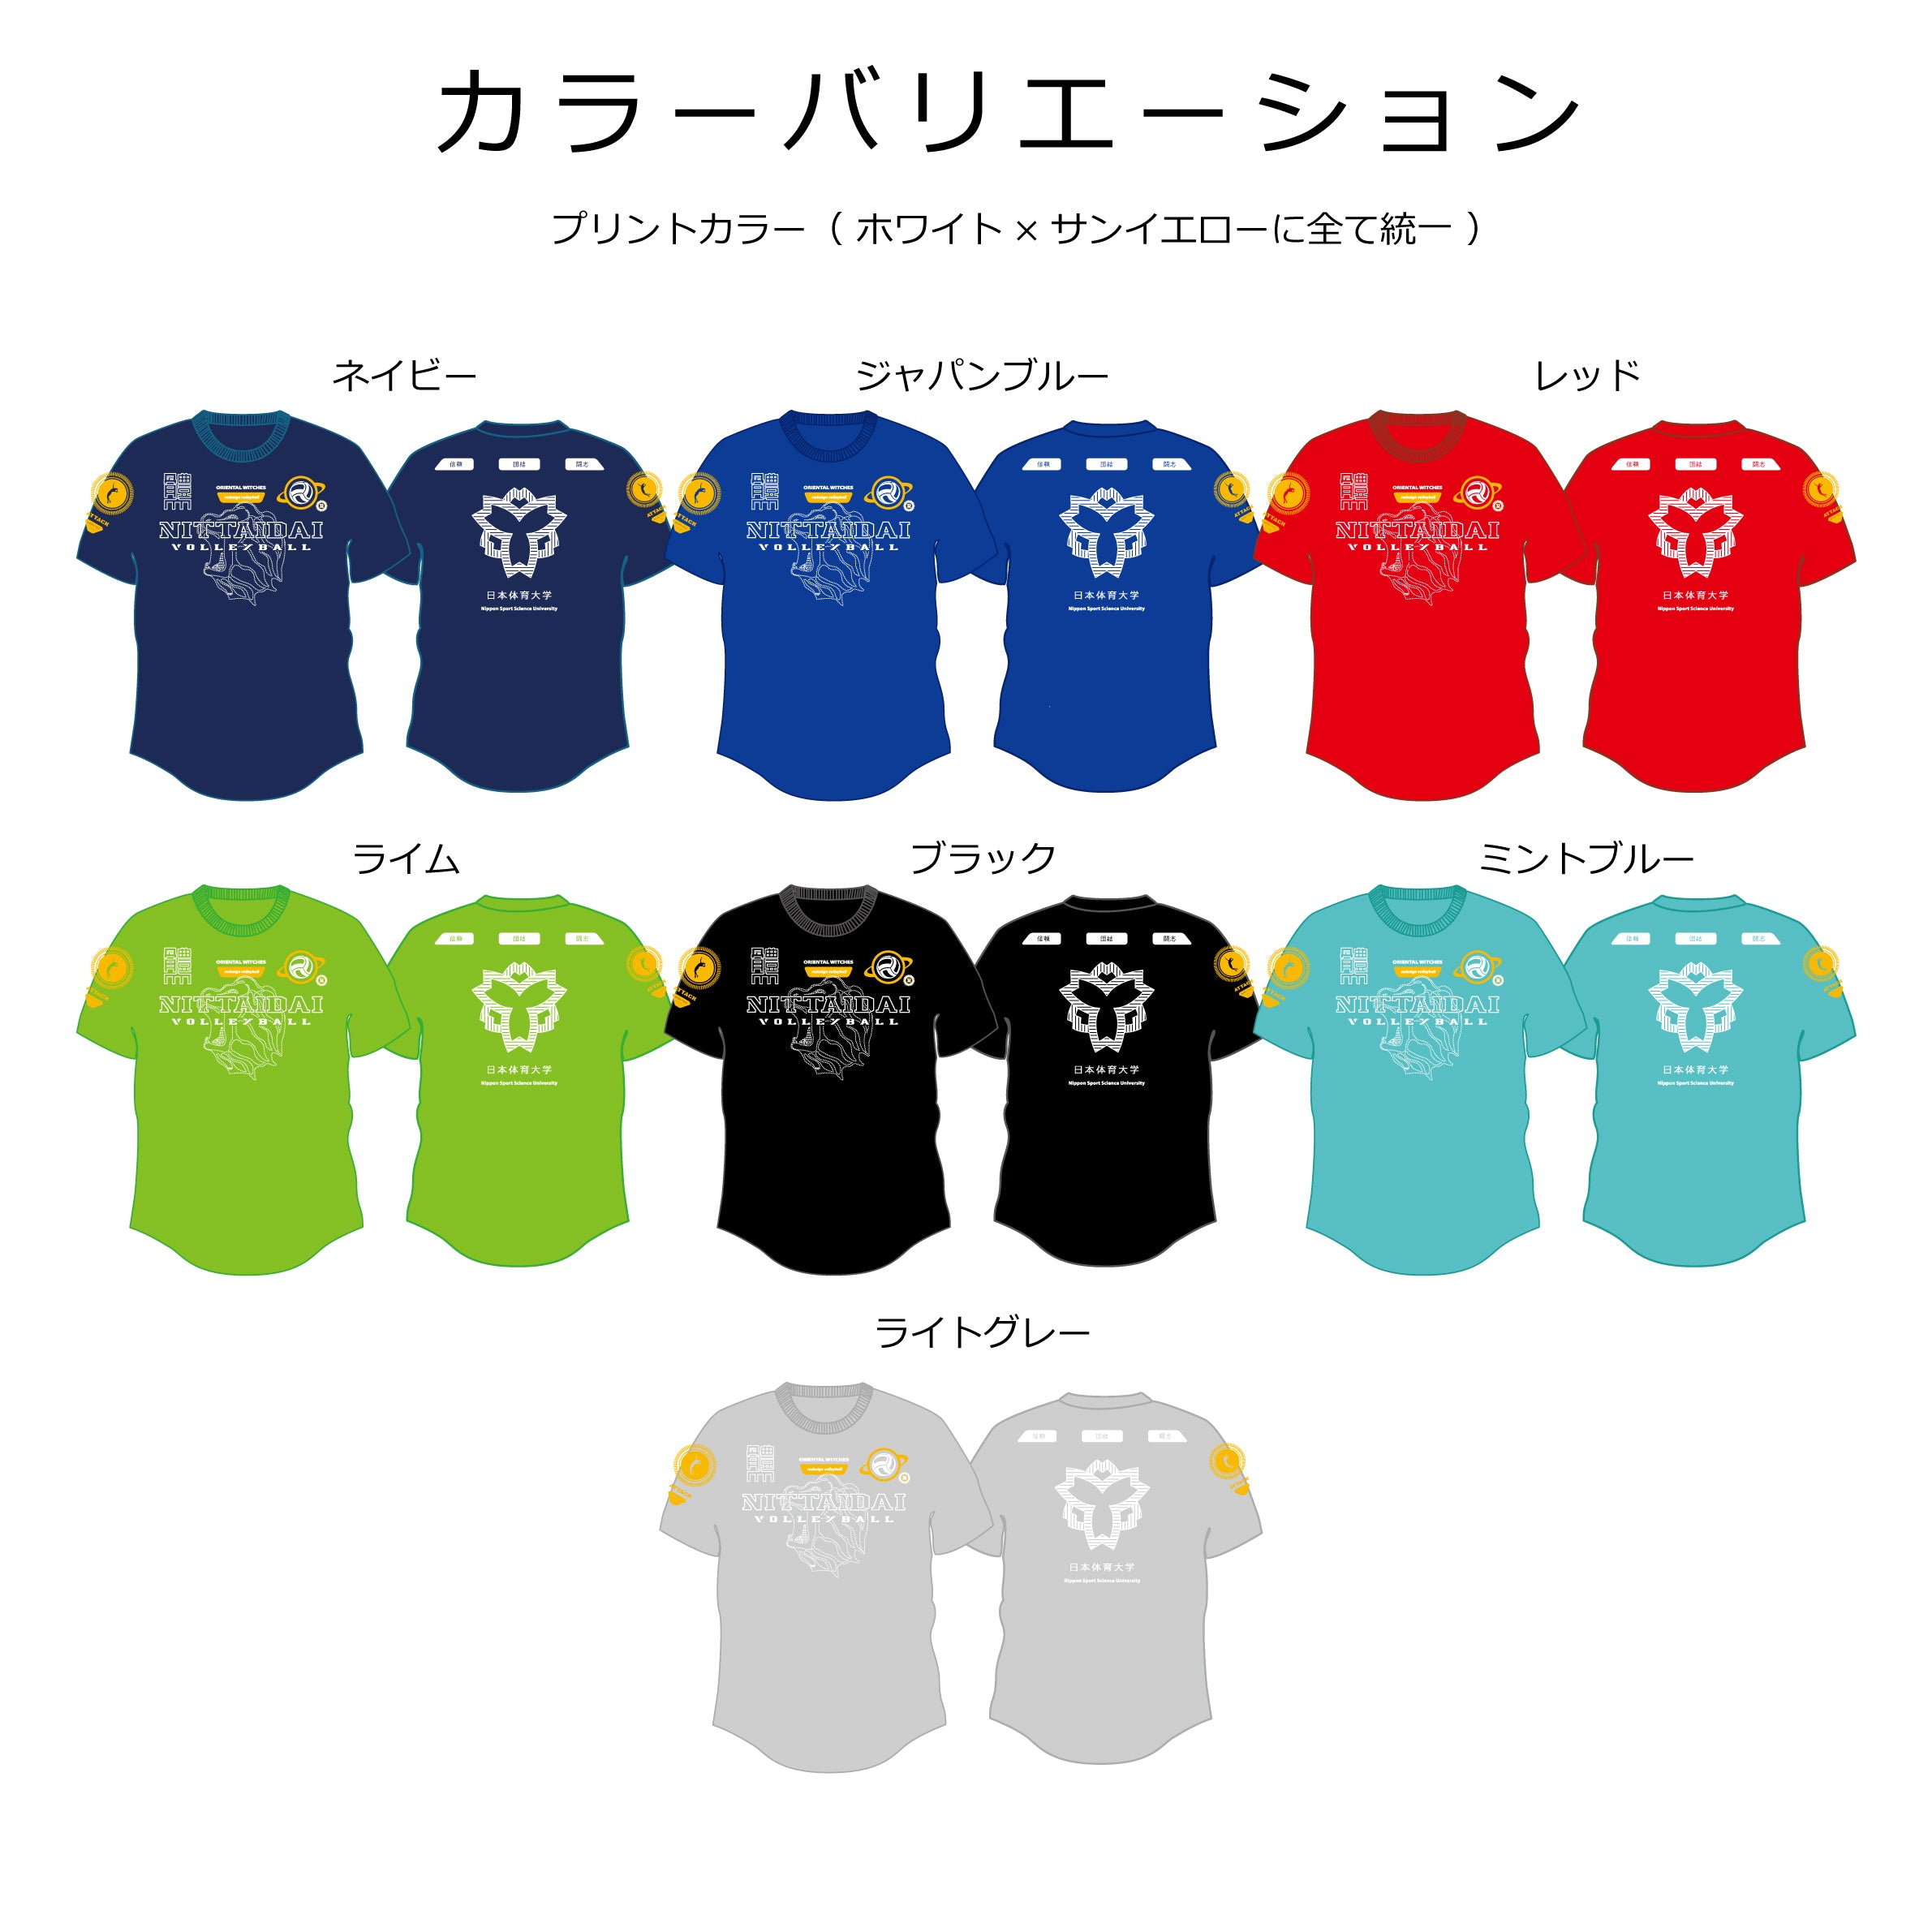 2023日本体育大学9人制バレーボール部応援Tシャツ